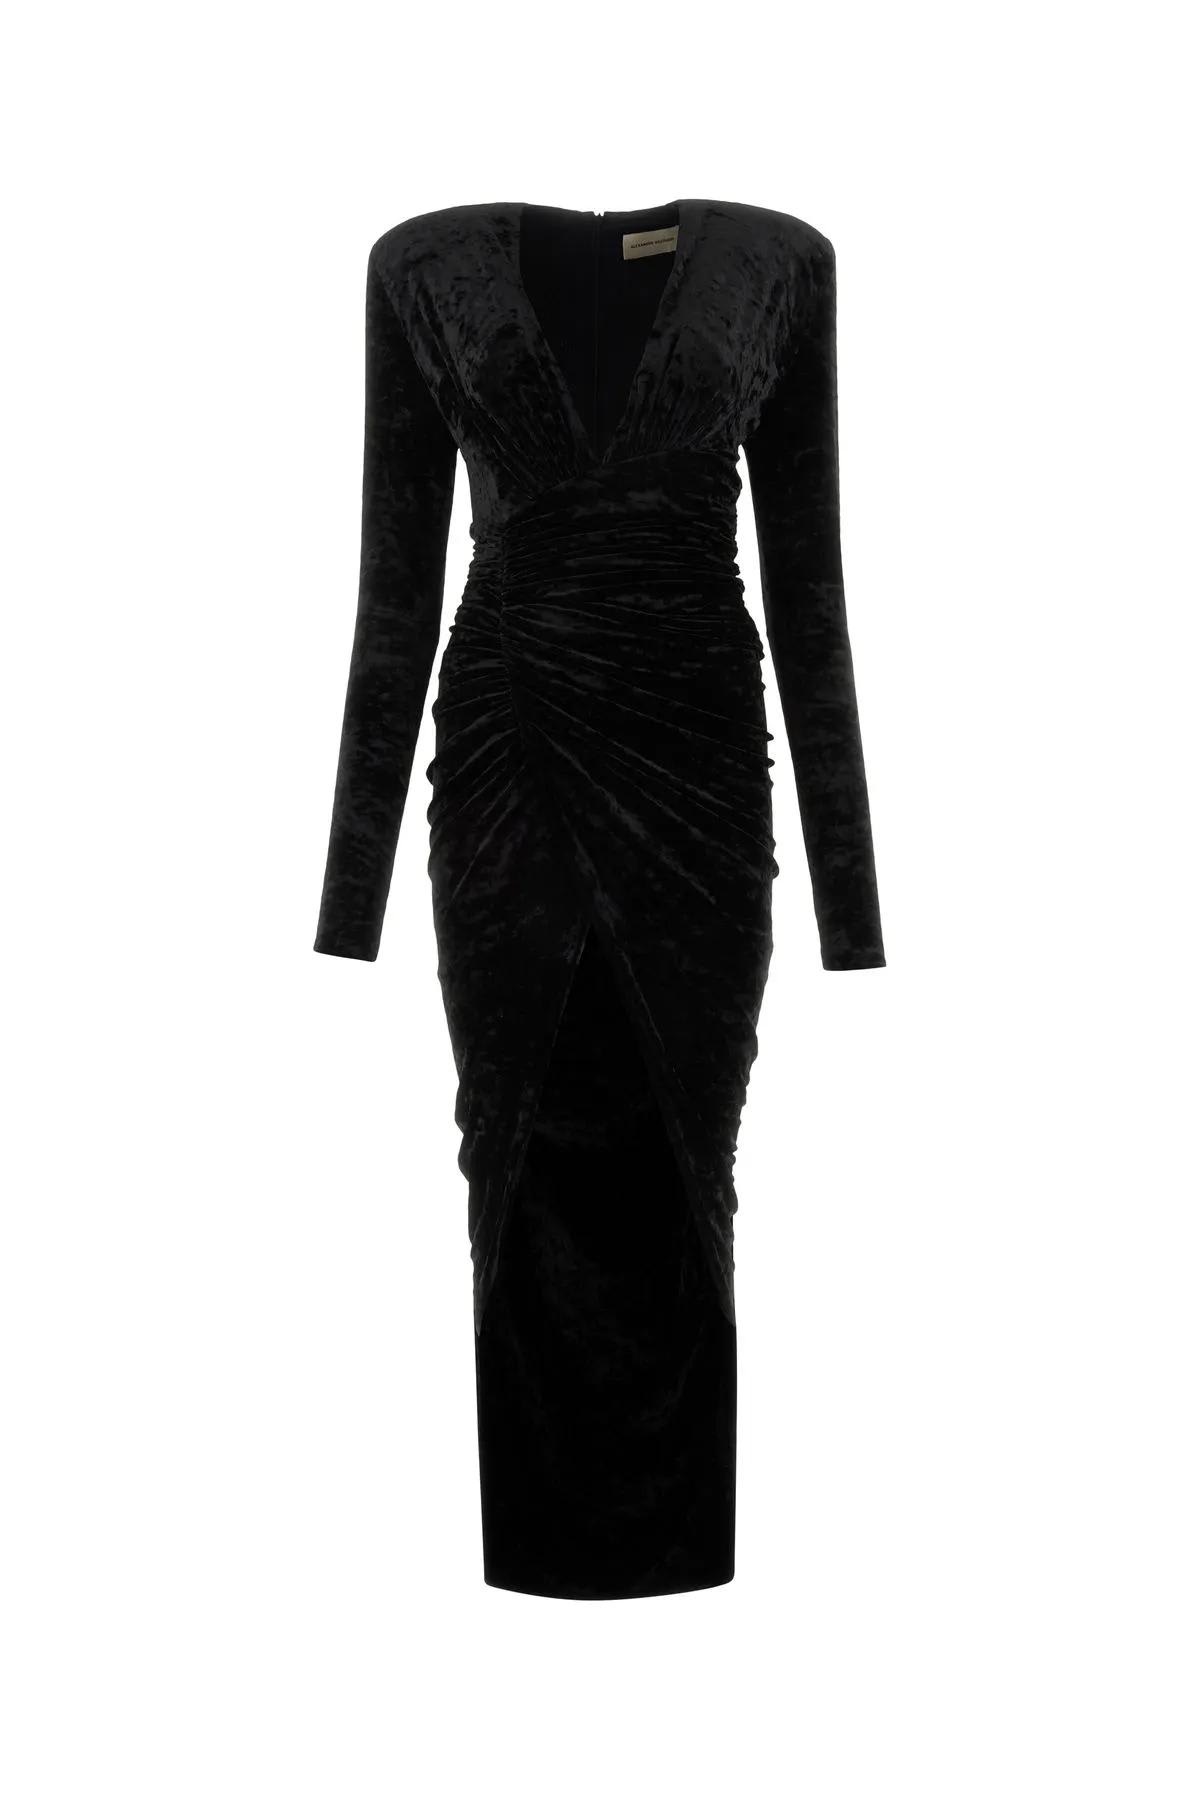 Alexandre Vauthier Black Velvet Long Dress